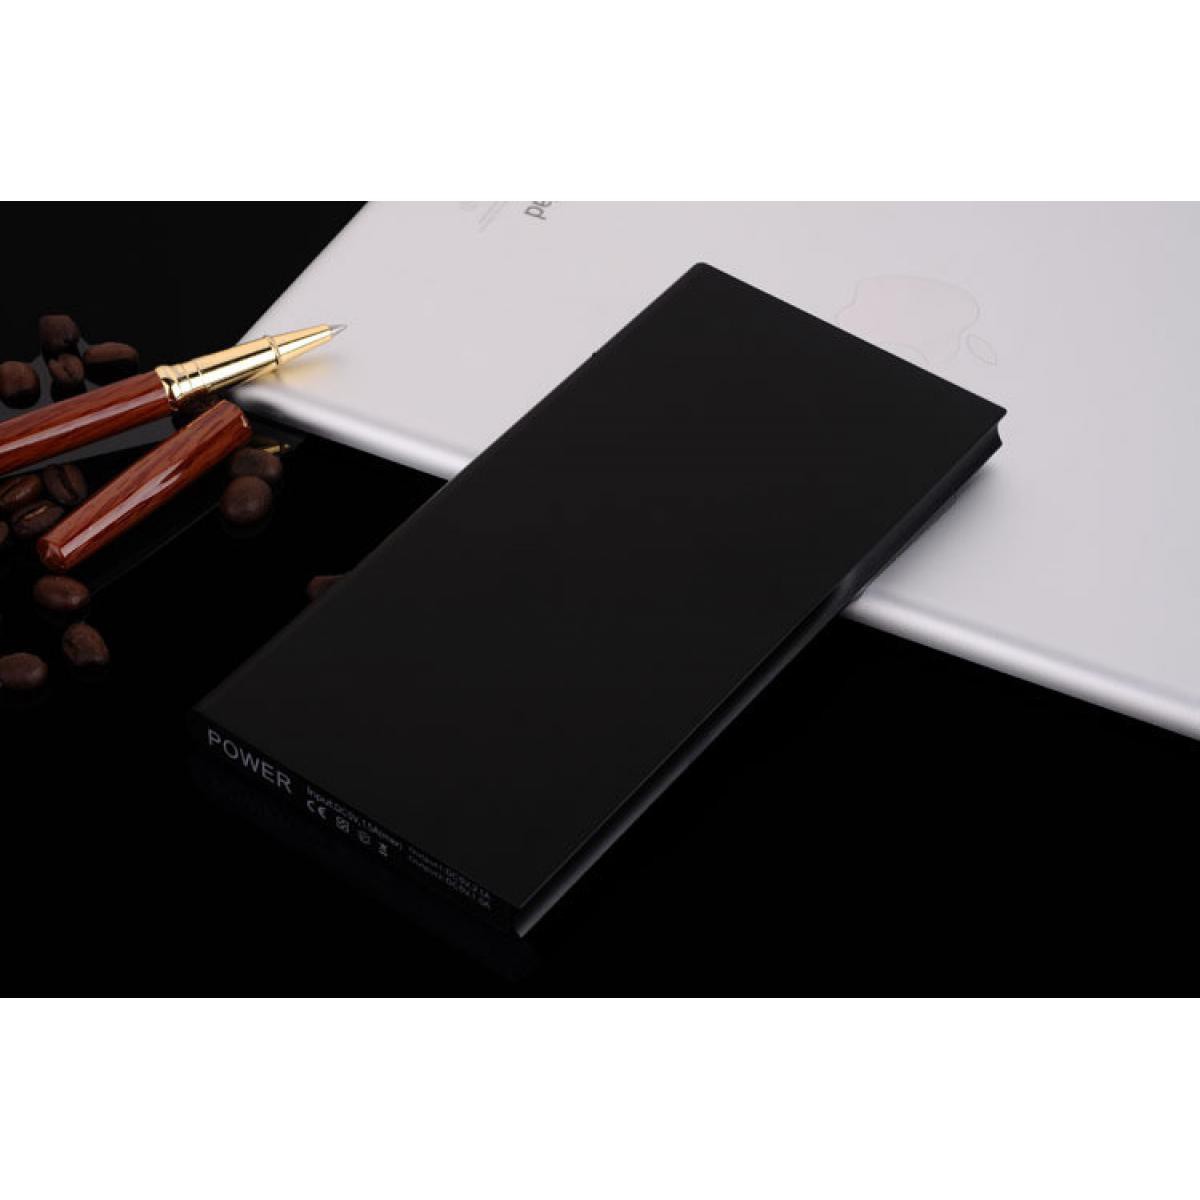 Shot - Batterie Externe Plate pour OPPO Find X2 Pro Smartphone Tablette Chargeur Power Bank 6000mAh 2 Port USB (NOIR) - Chargeur secteur téléphone